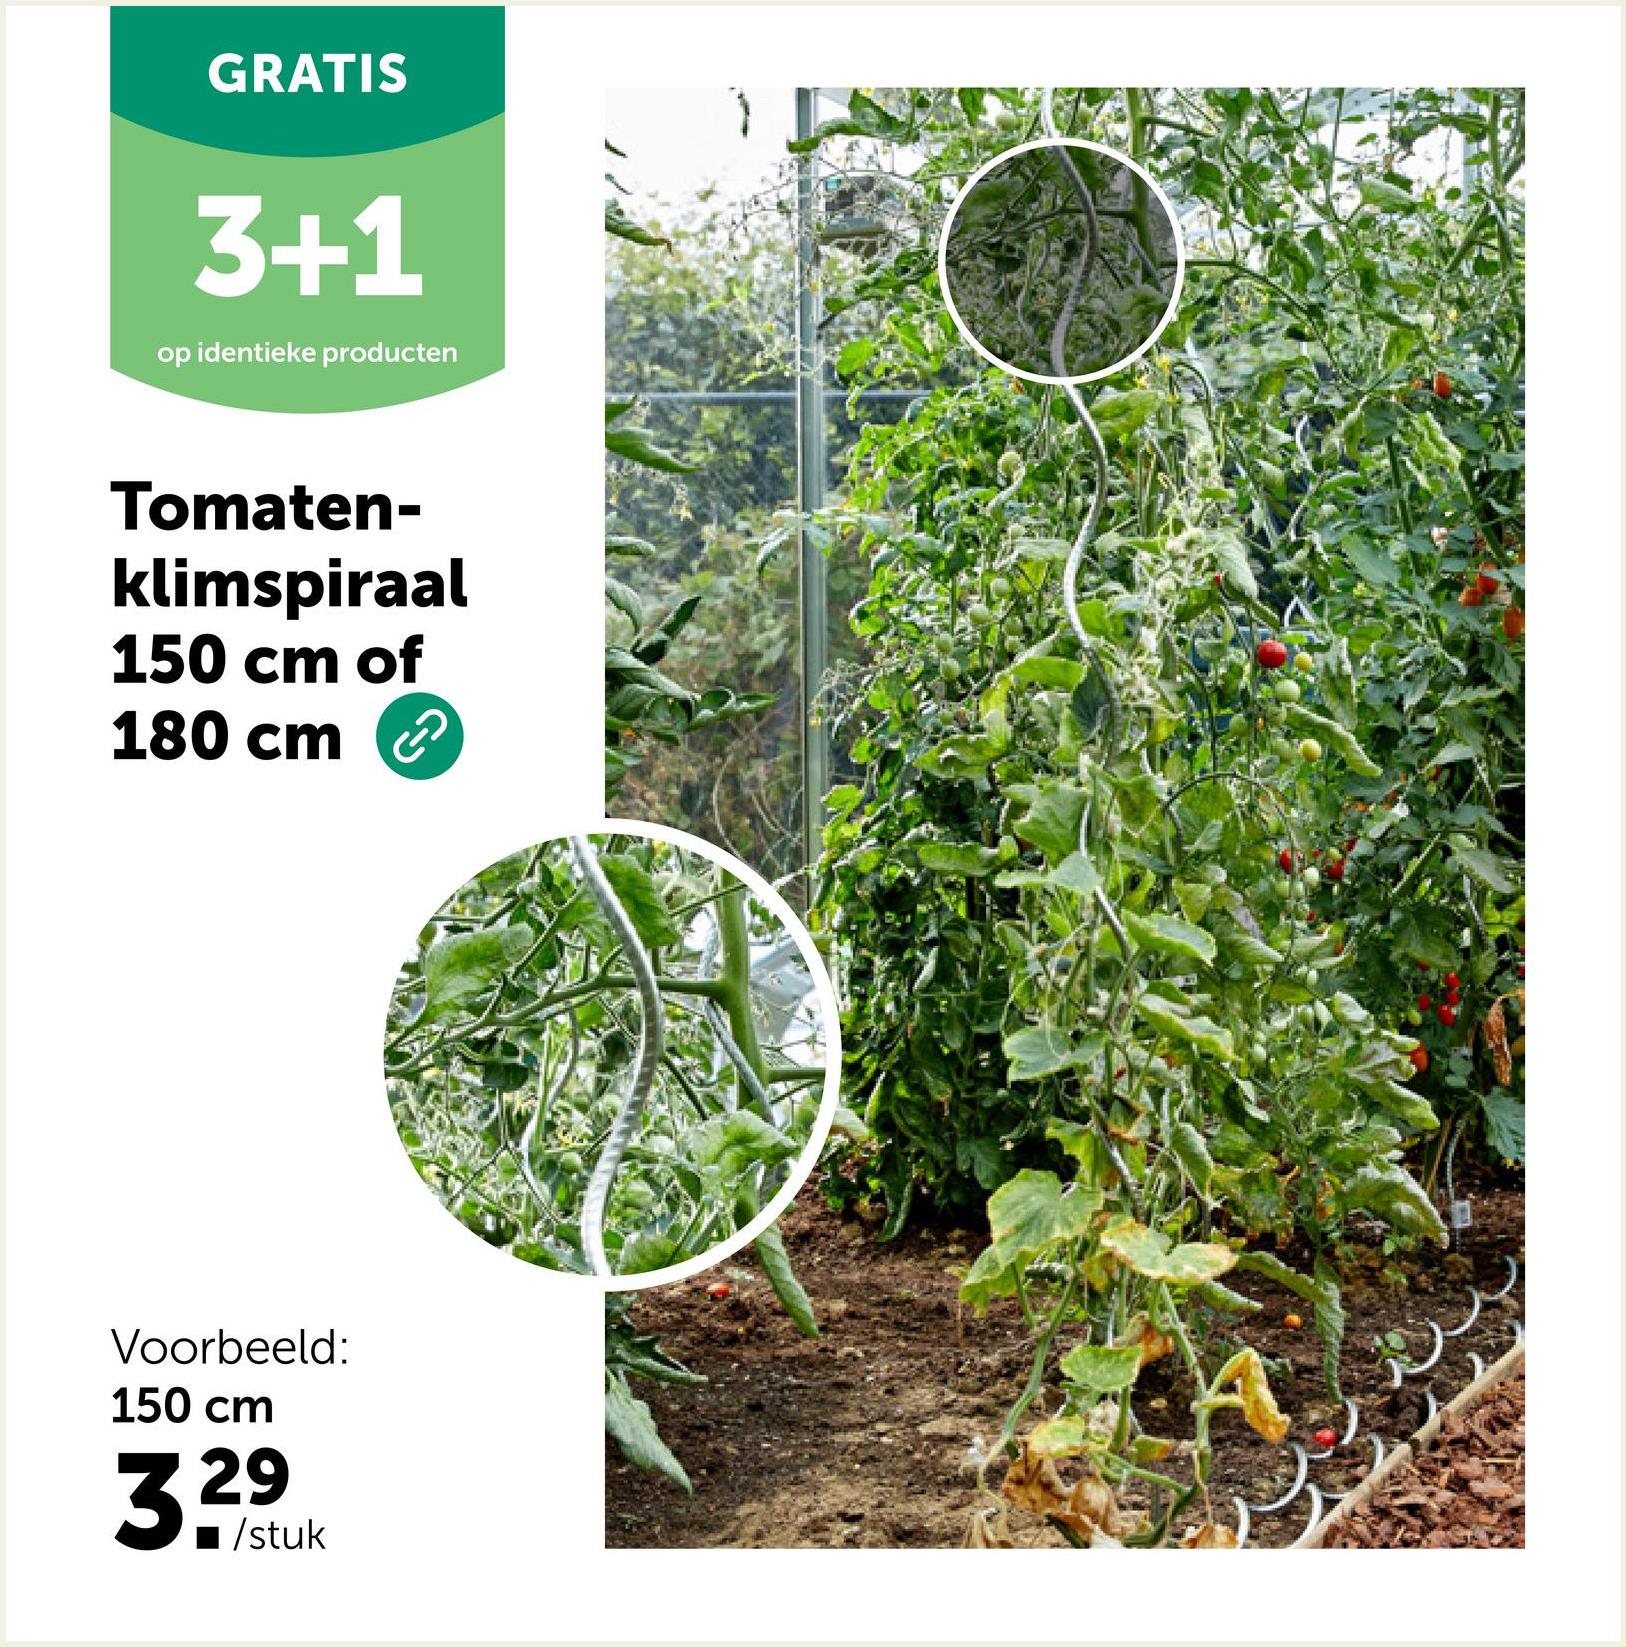 GRATIS
3+1
op identieke producten
Tomaten-
klimspiraal
150 cm of
180 cm
Voorbeeld:
150 cm
3.29
1/stuk